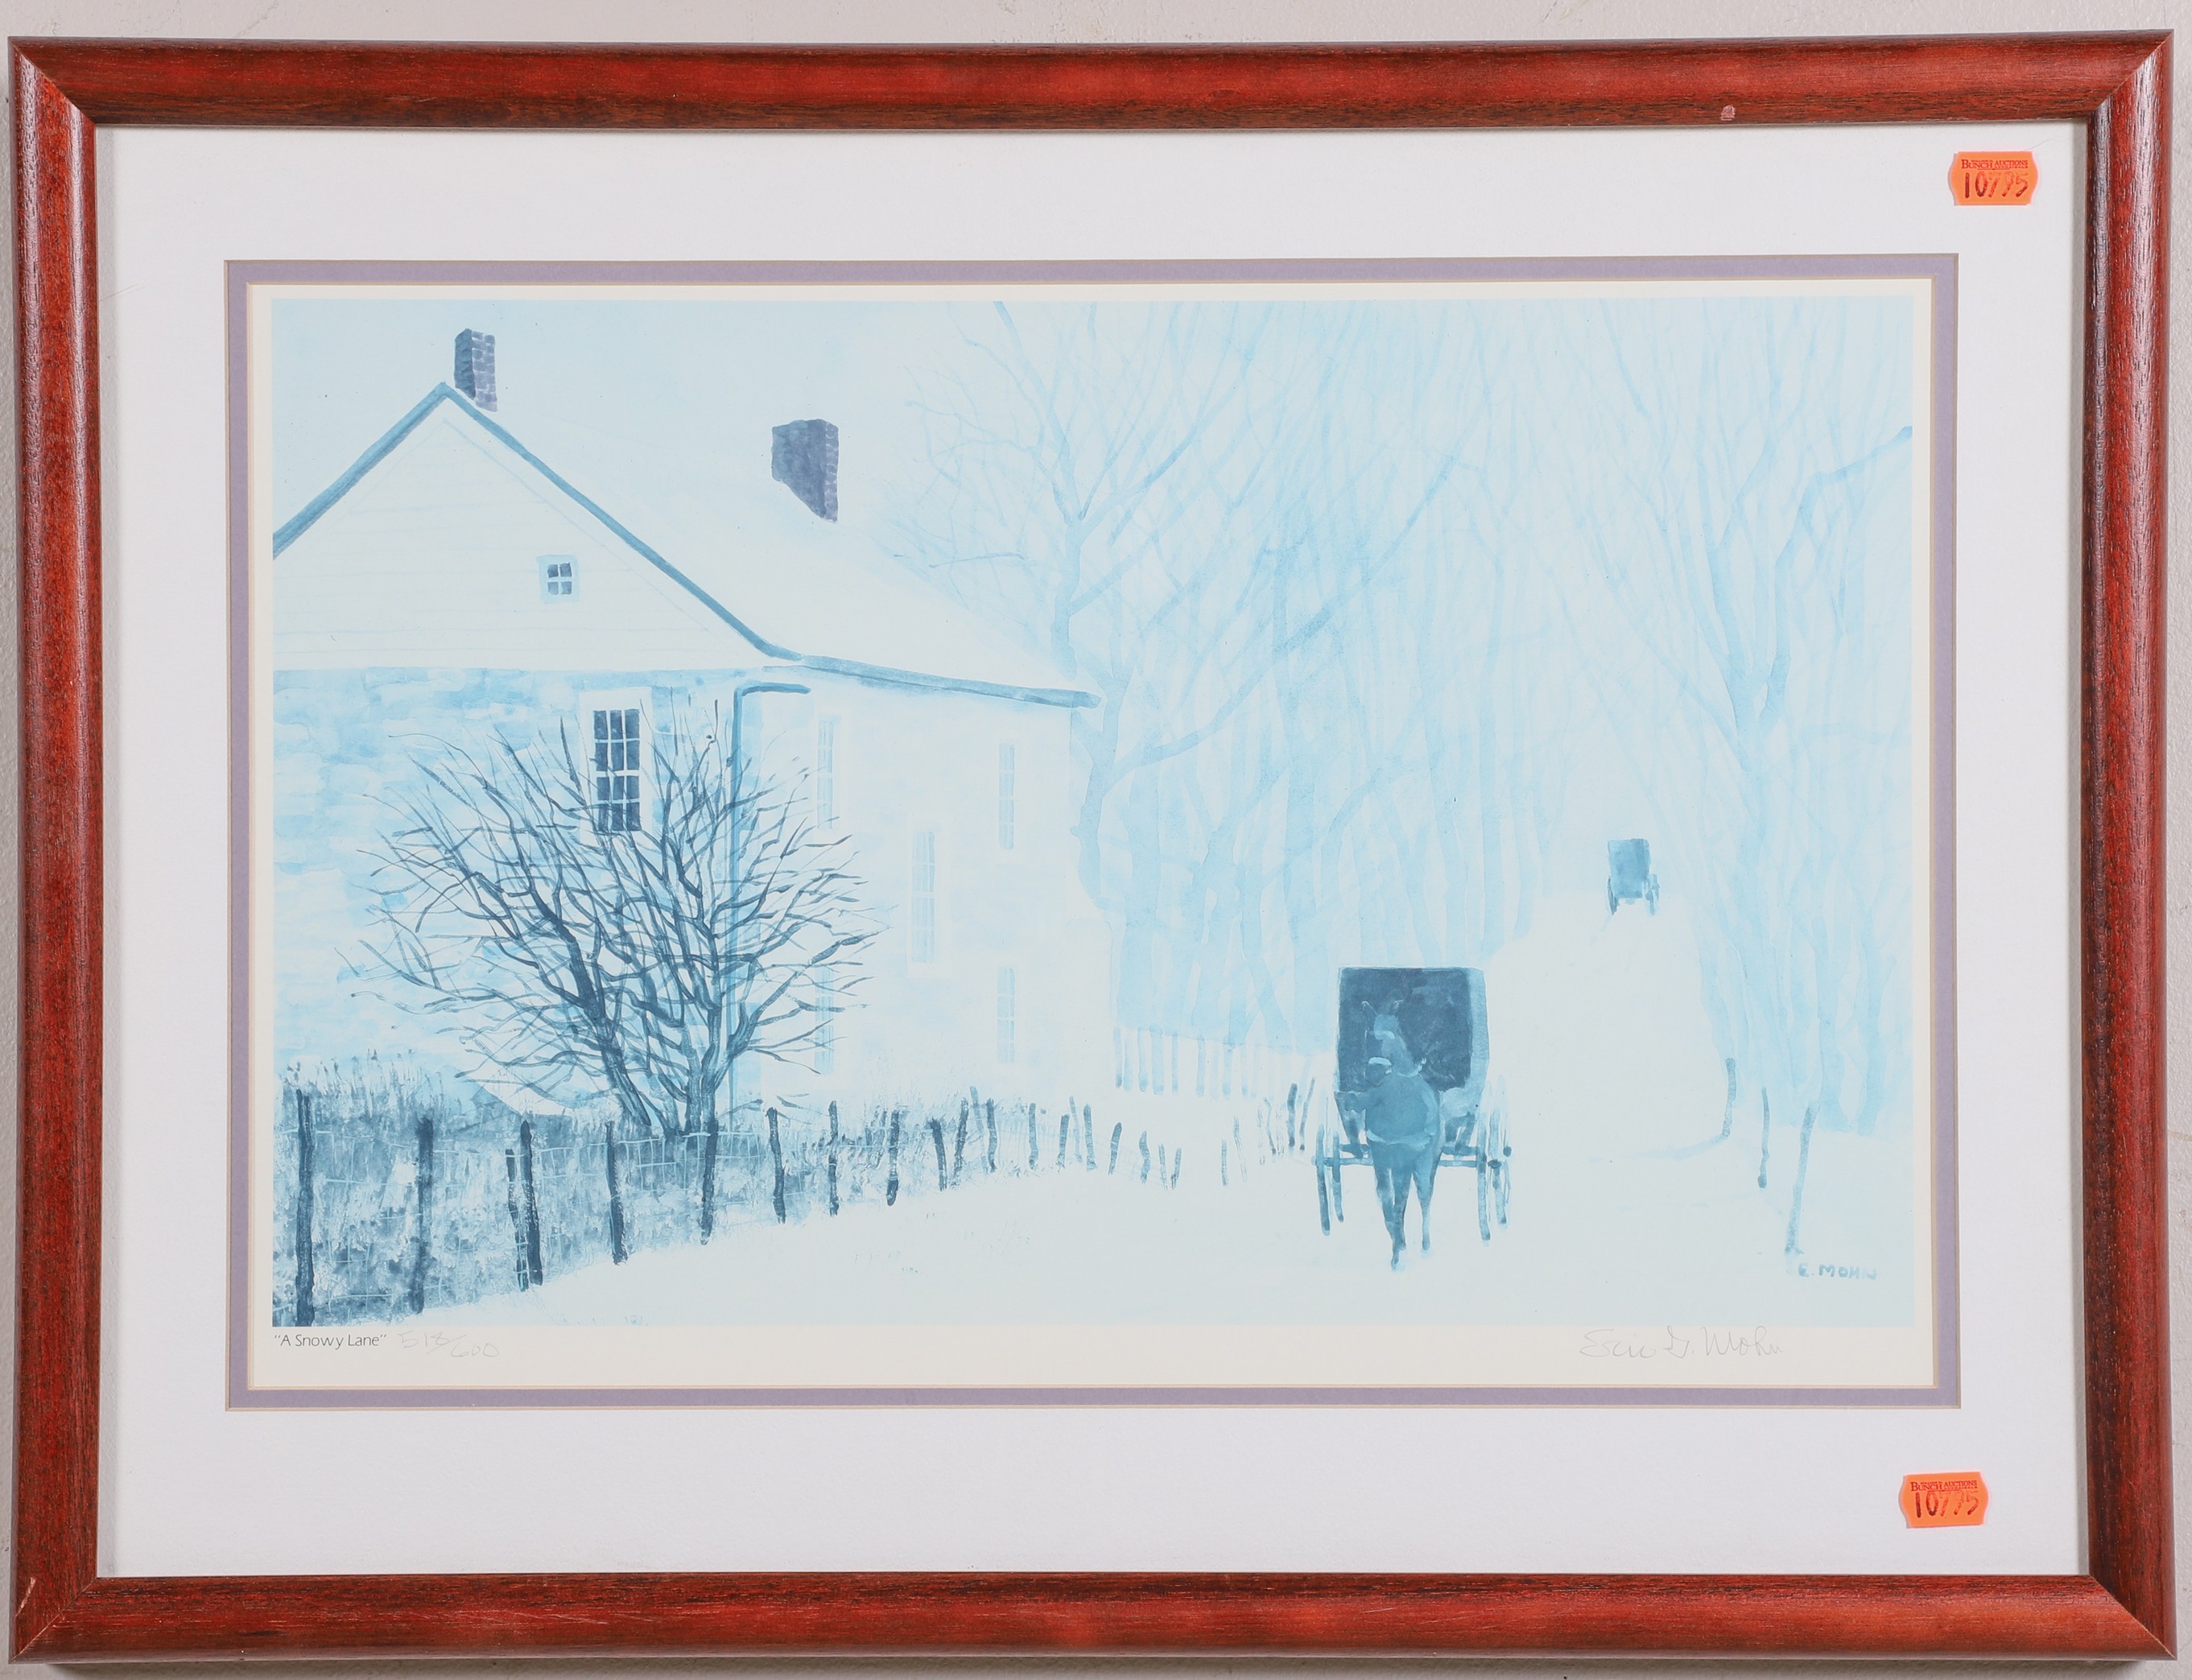 Eric Mohn Lithograph "A Snowy Lane",